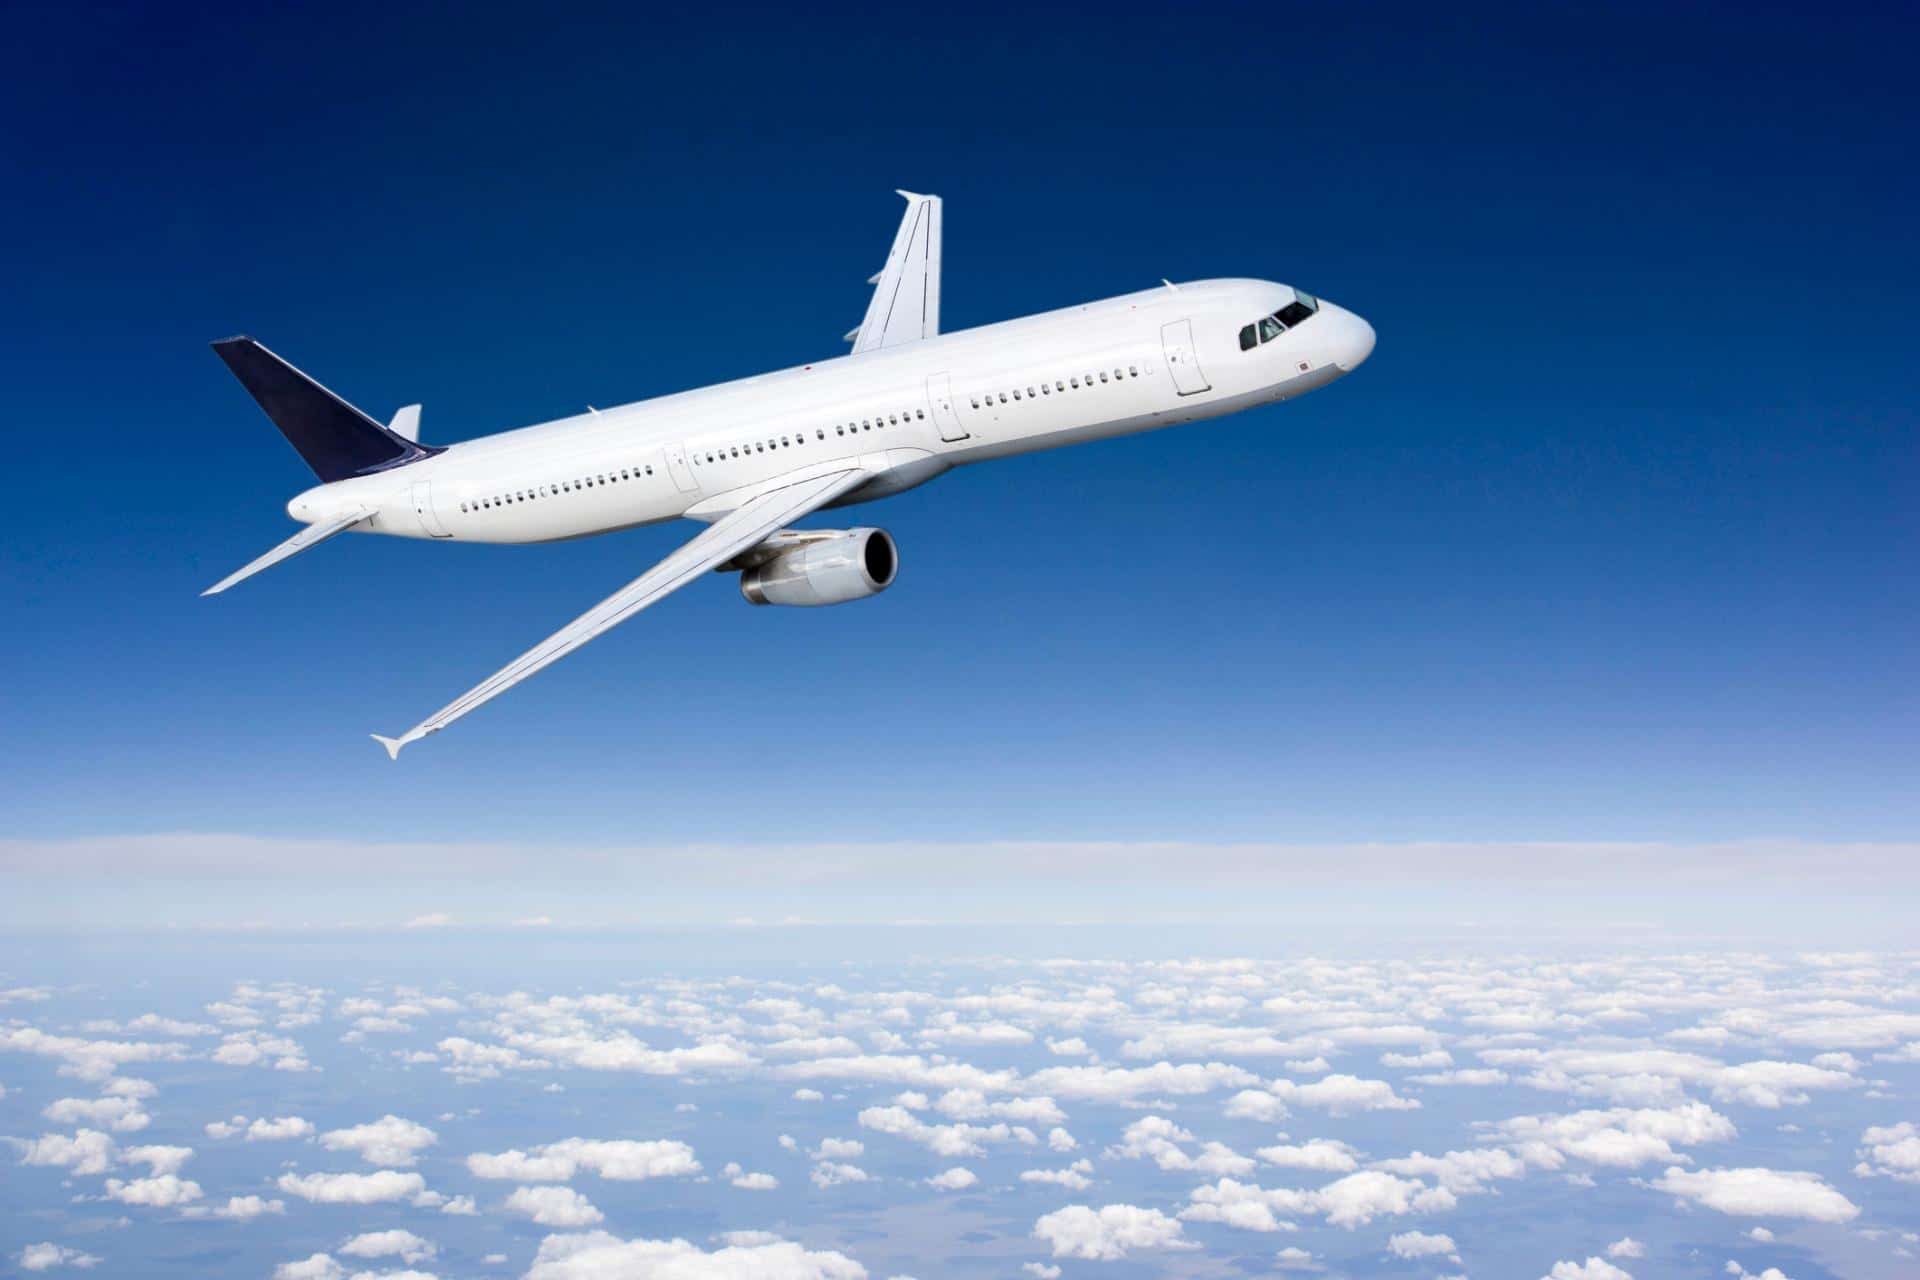 Assaeroporti, posti di lavoro e investimenti a rischio per tutto il trasporto aereo